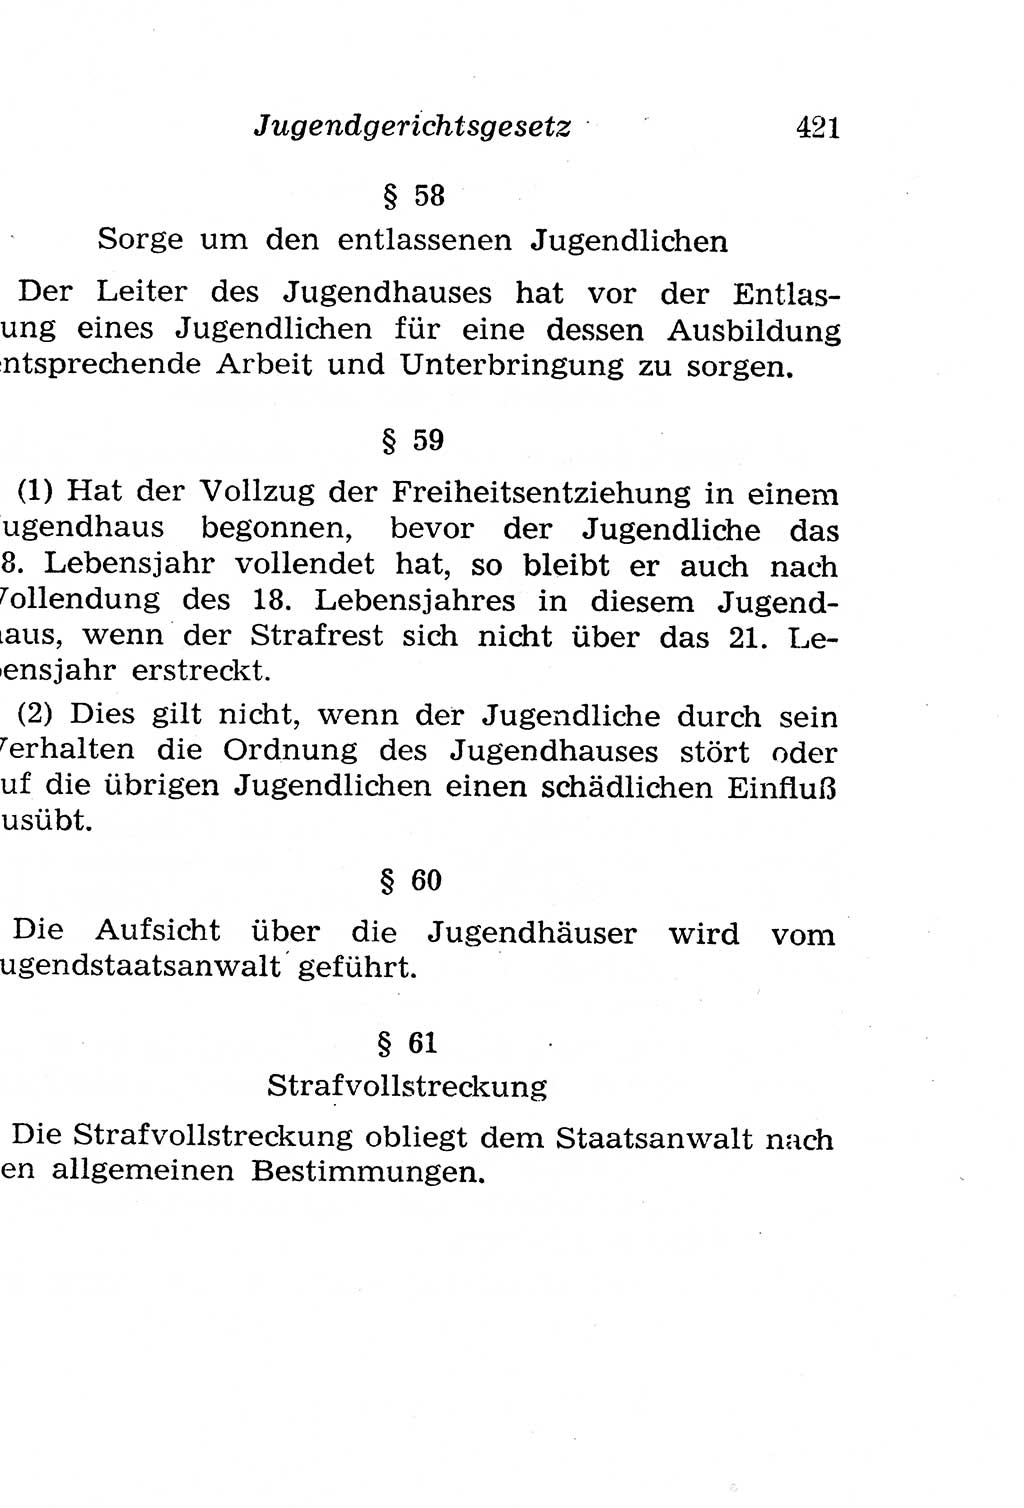 Strafgesetzbuch (StGB) und andere Strafgesetze [Deutsche Demokratische Republik (DDR)] 1958, Seite 421 (StGB Strafges. DDR 1958, S. 421)